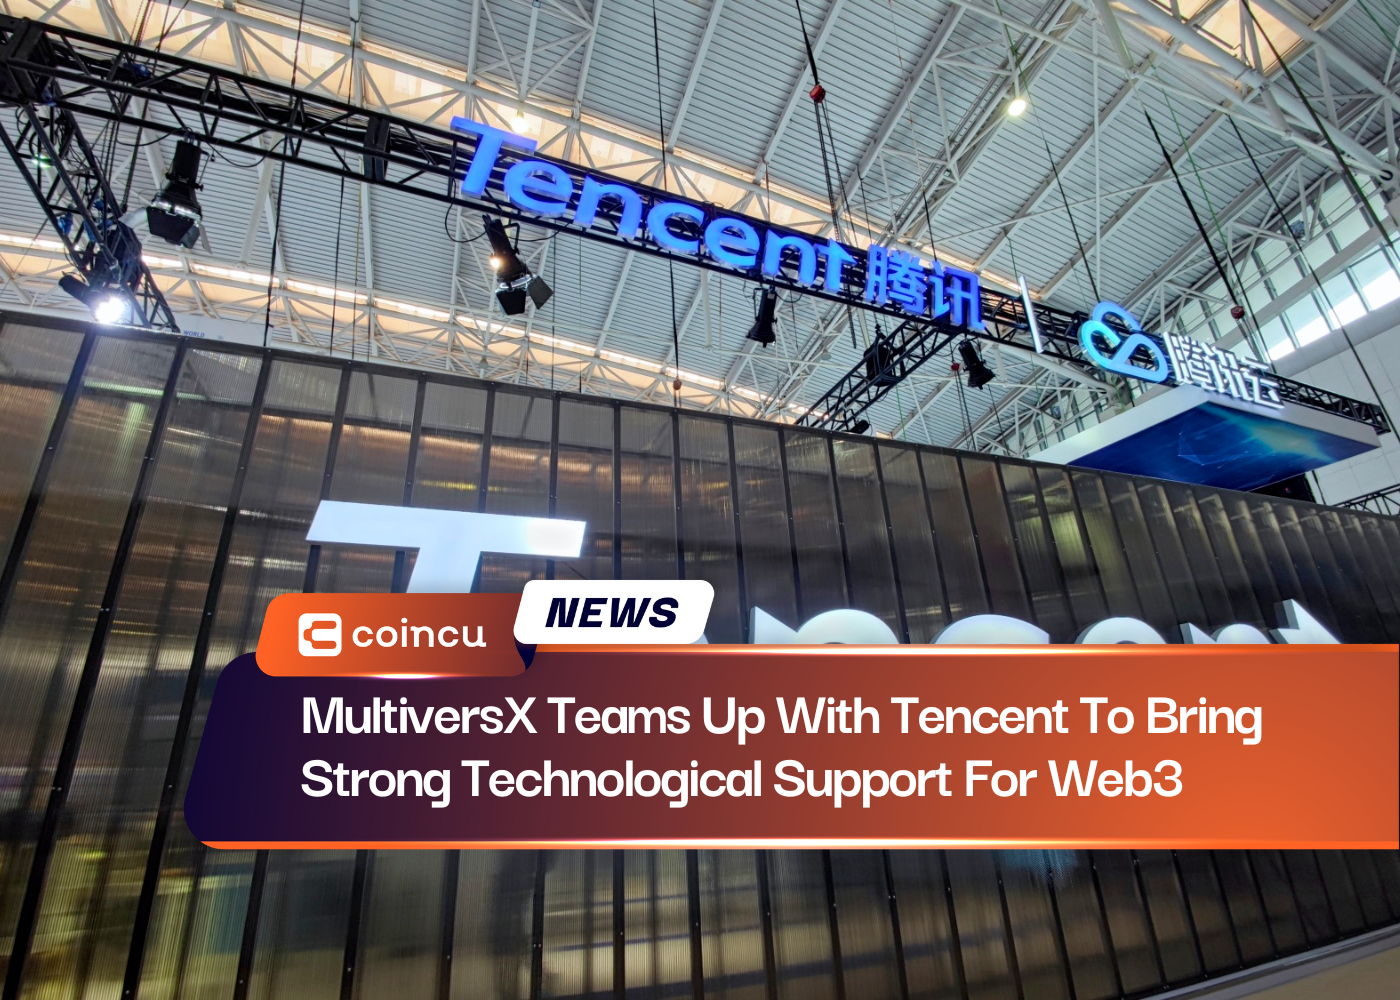 मल्टीवर्सएक्स ने वेब3 के लिए मजबूत तकनीकी समर्थन लाने के लिए टेनसेंट के साथ साझेदारी की है